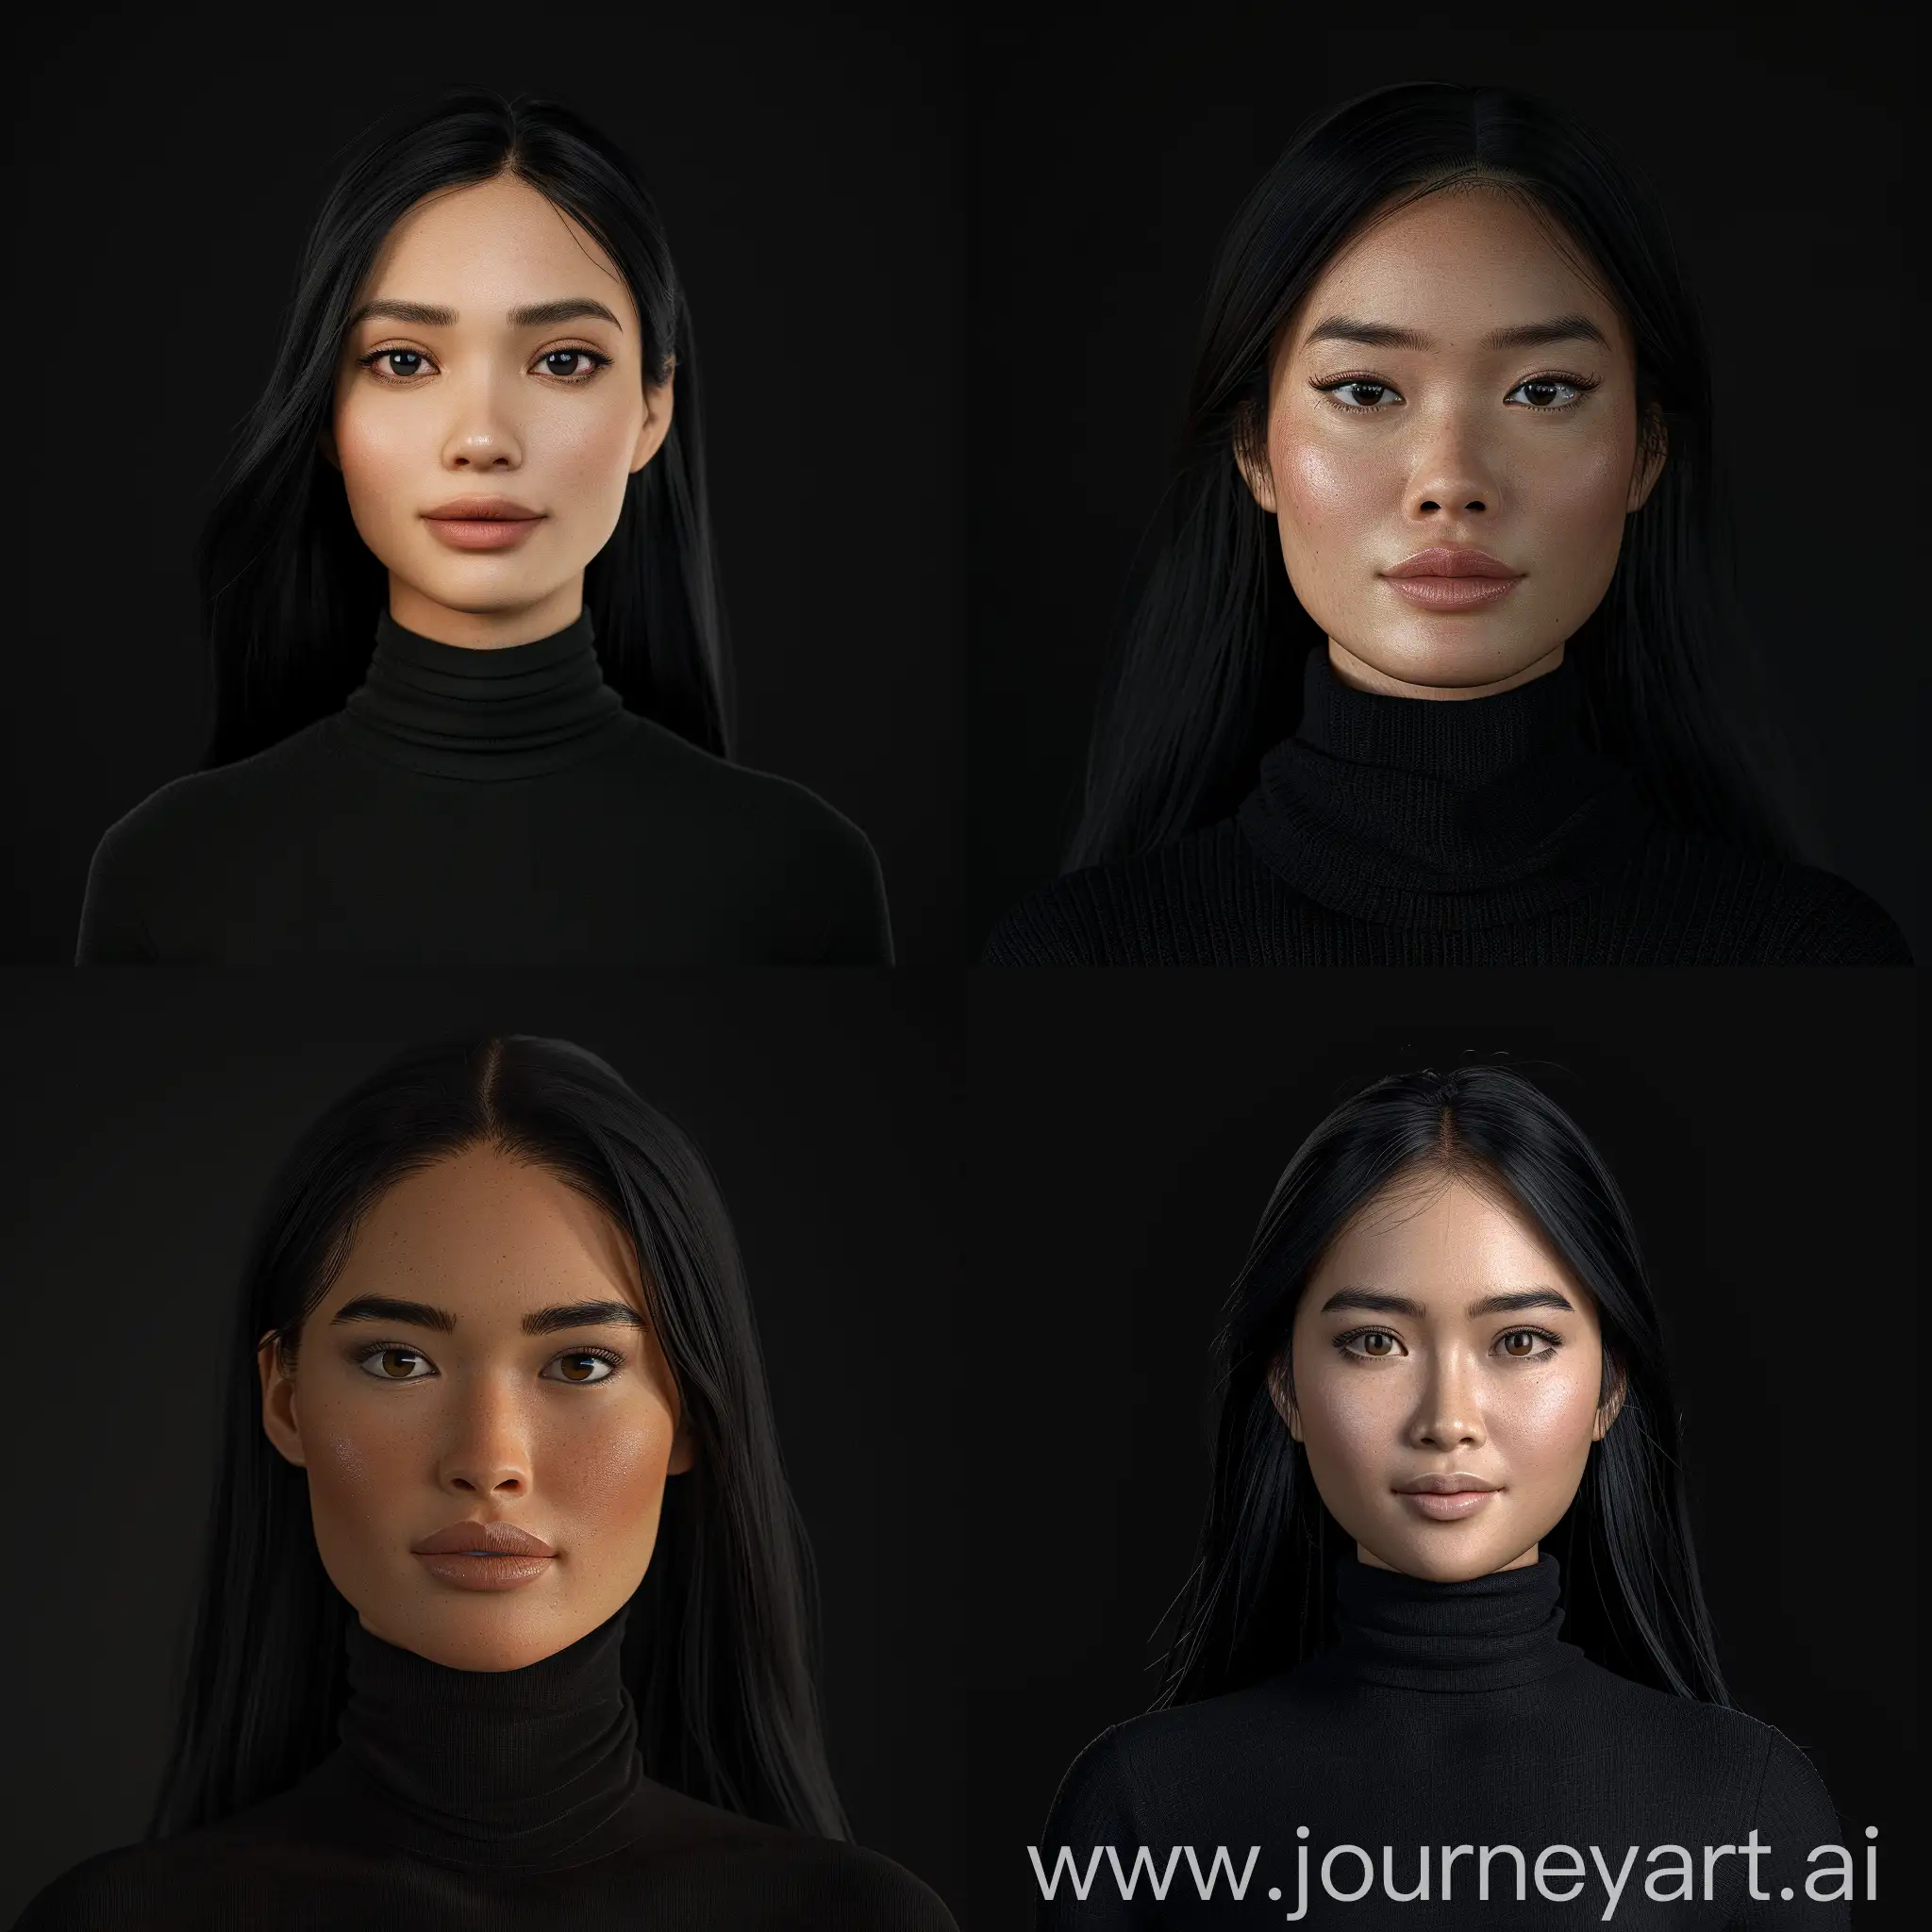 Realistic-3D-Filipina-Woman-Portrait-in-Black-Attire-on-Black-Background